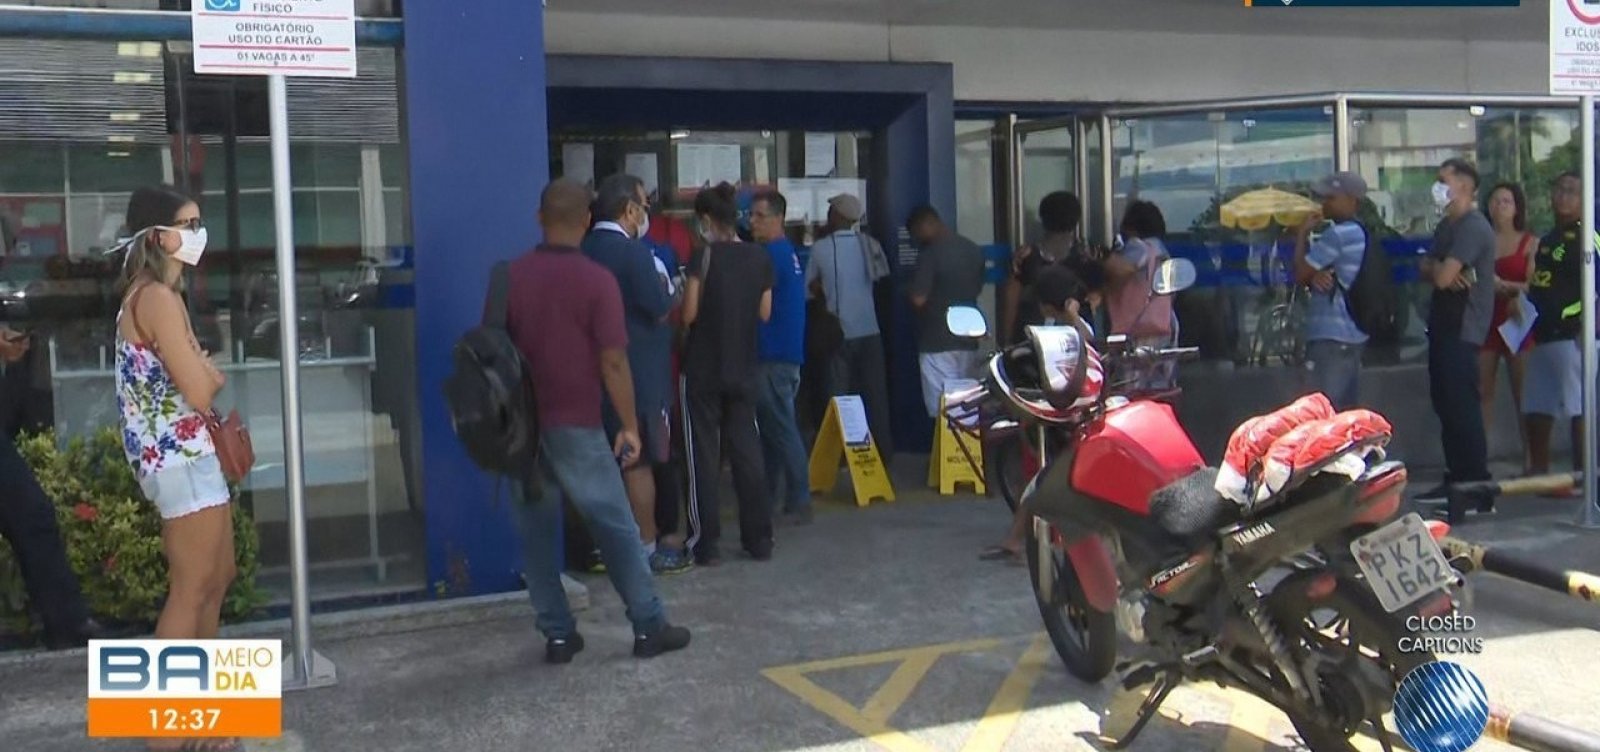 Prefeitura de Salvador determina que agências bancárias organizem distanciamento na fila de clientes